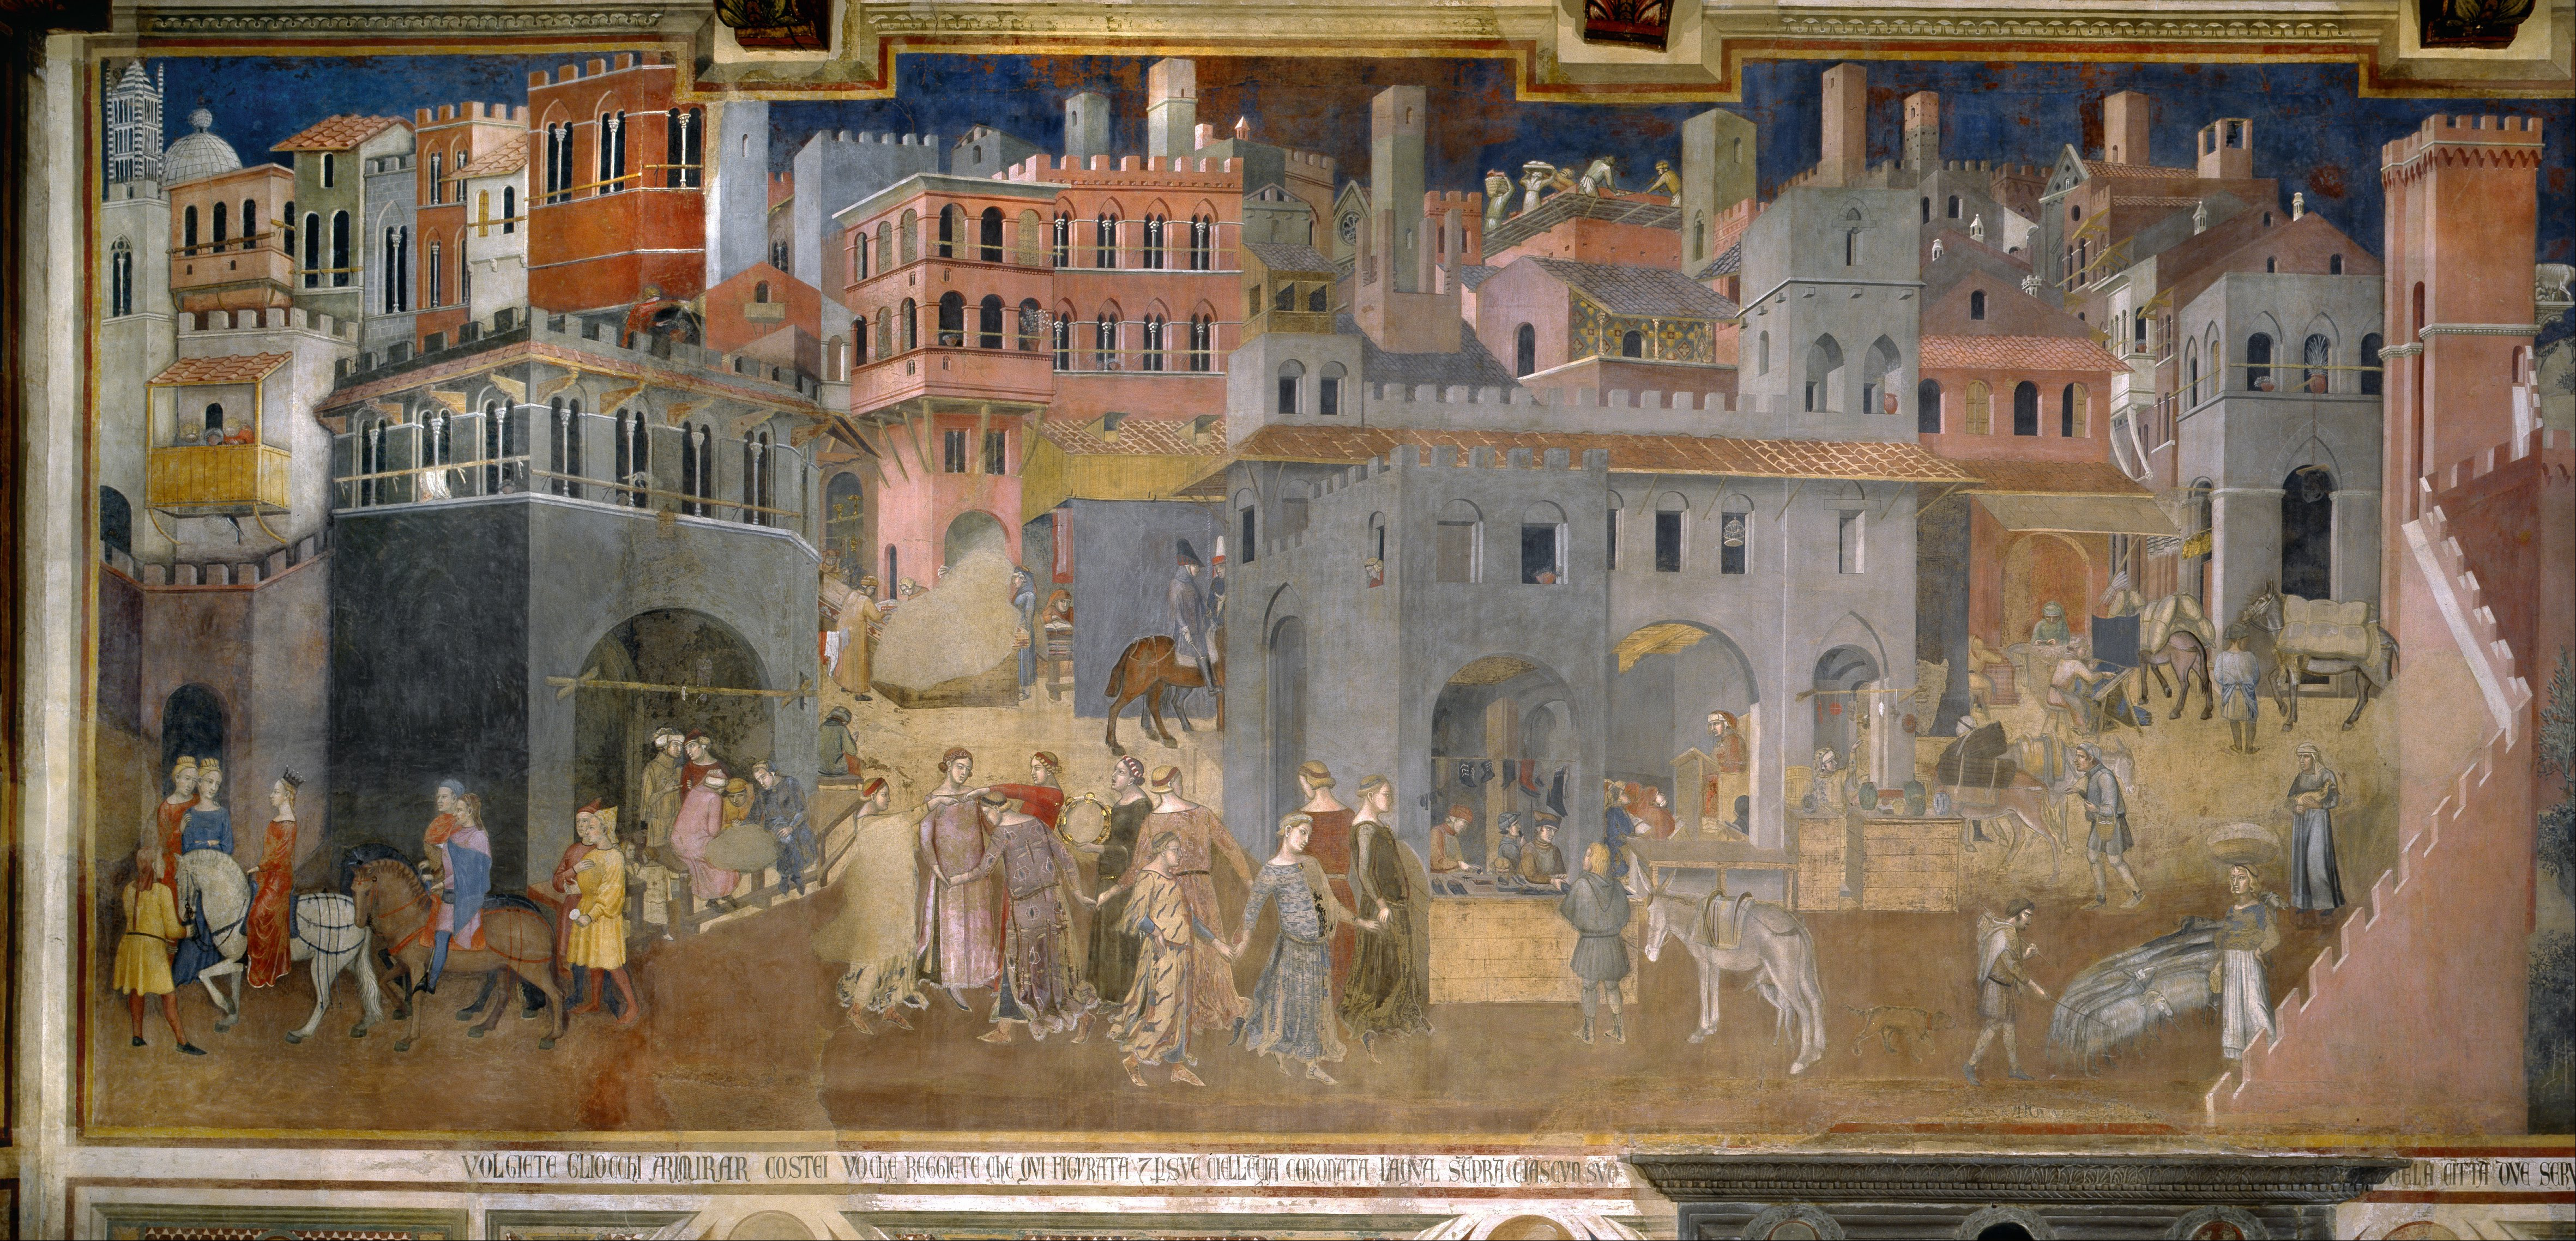 Ambrogio Lorenzetti,  Effetti del Buon Governo in città, 1338-1339, Sala della Pace, Palazzo Pubblico, Siena

